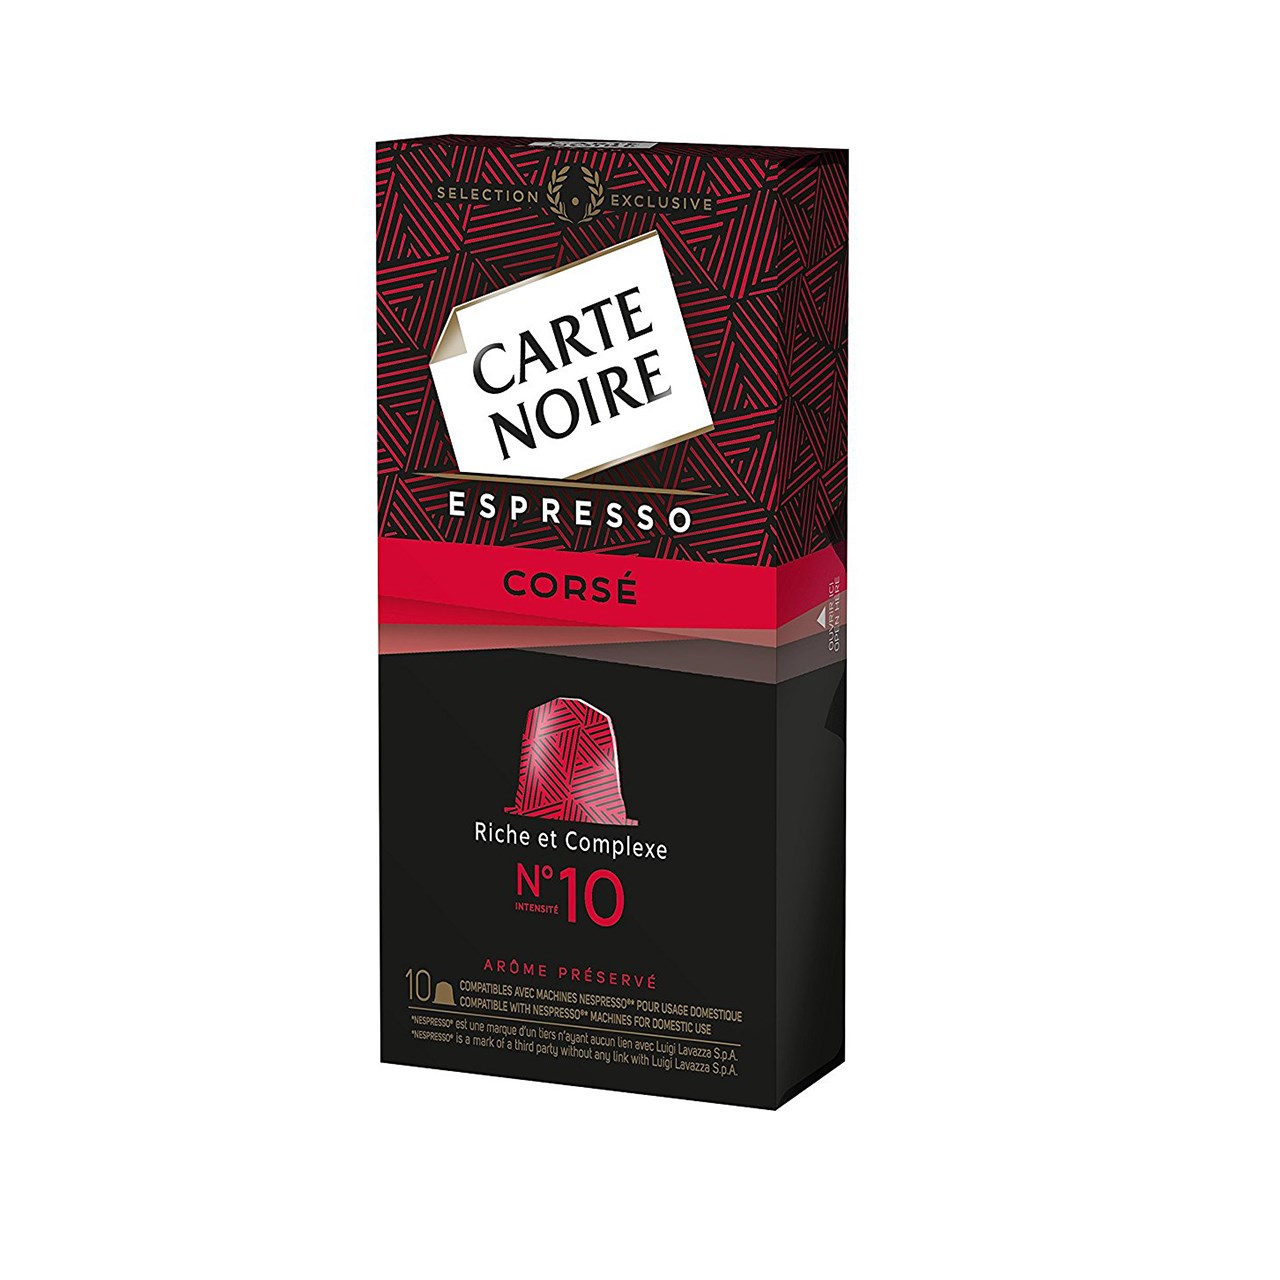 کپسول قهوه کارته نویر مدل Espresso Corse